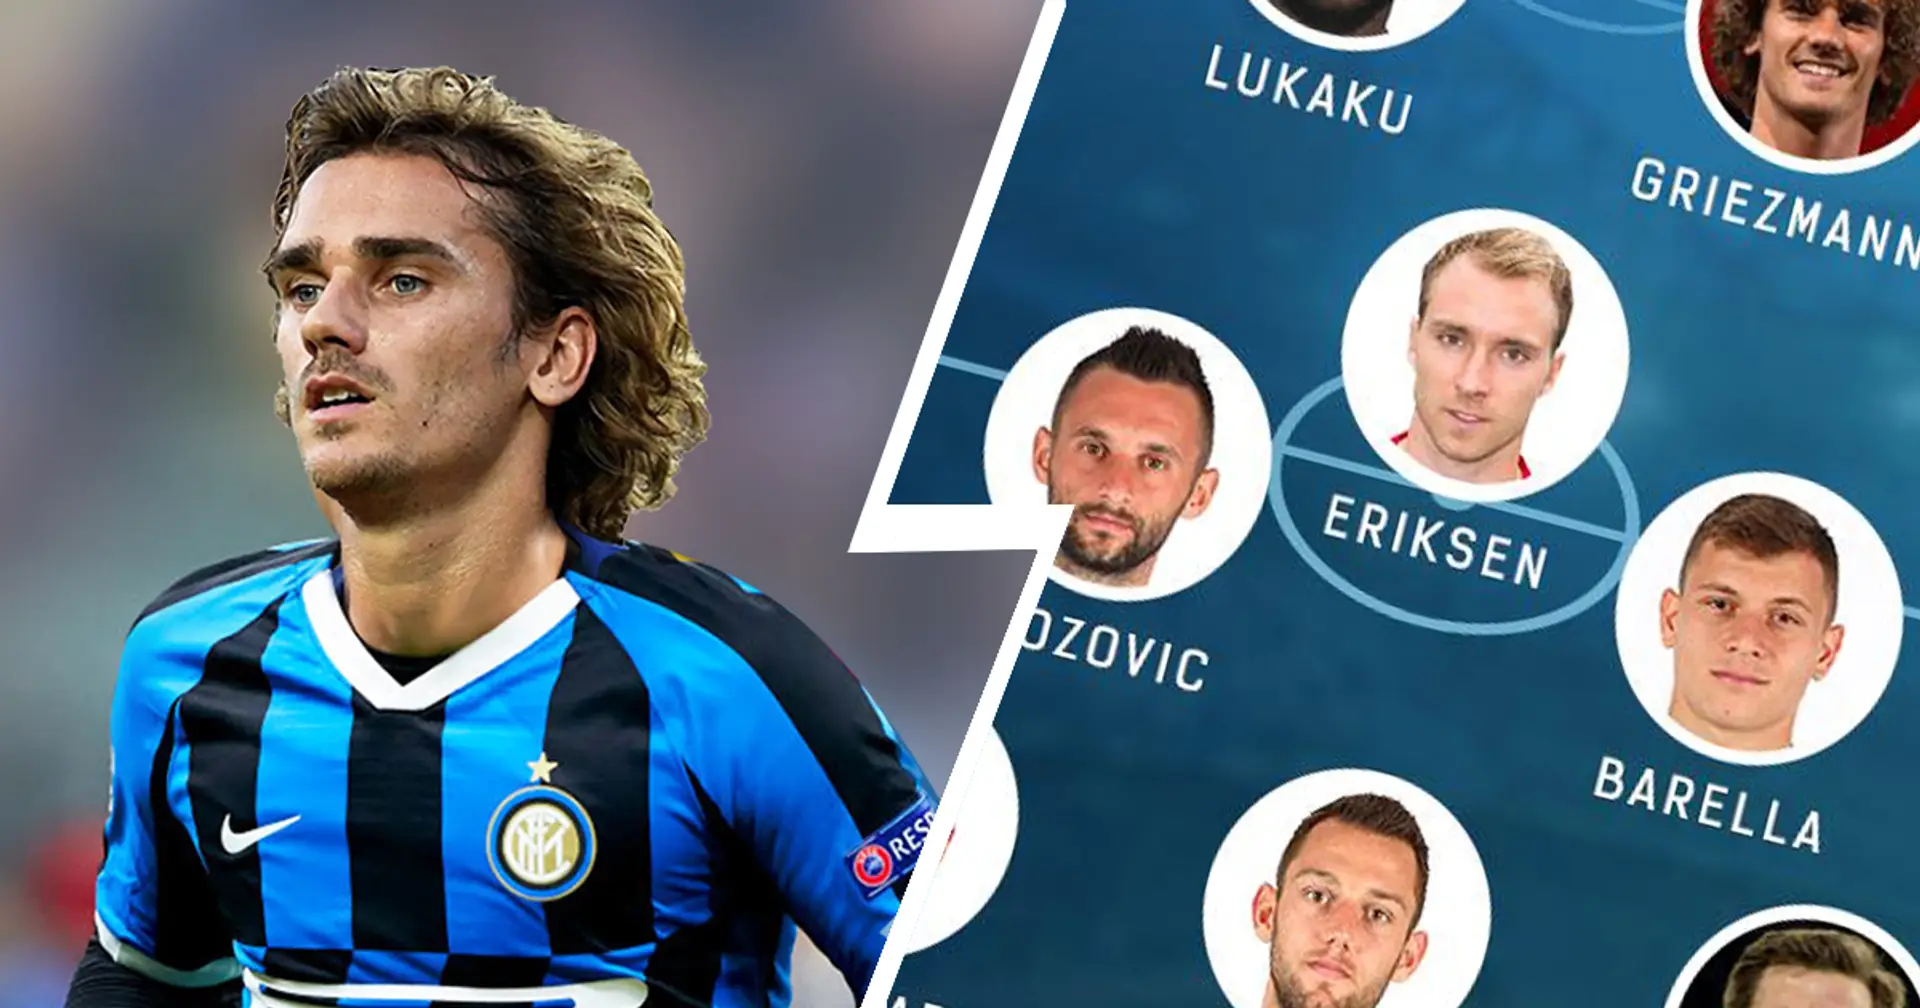 Vertonghen in difesa e Griezmann in attacco: tre potenziali formazioni dell'Inter per la prossima stagione